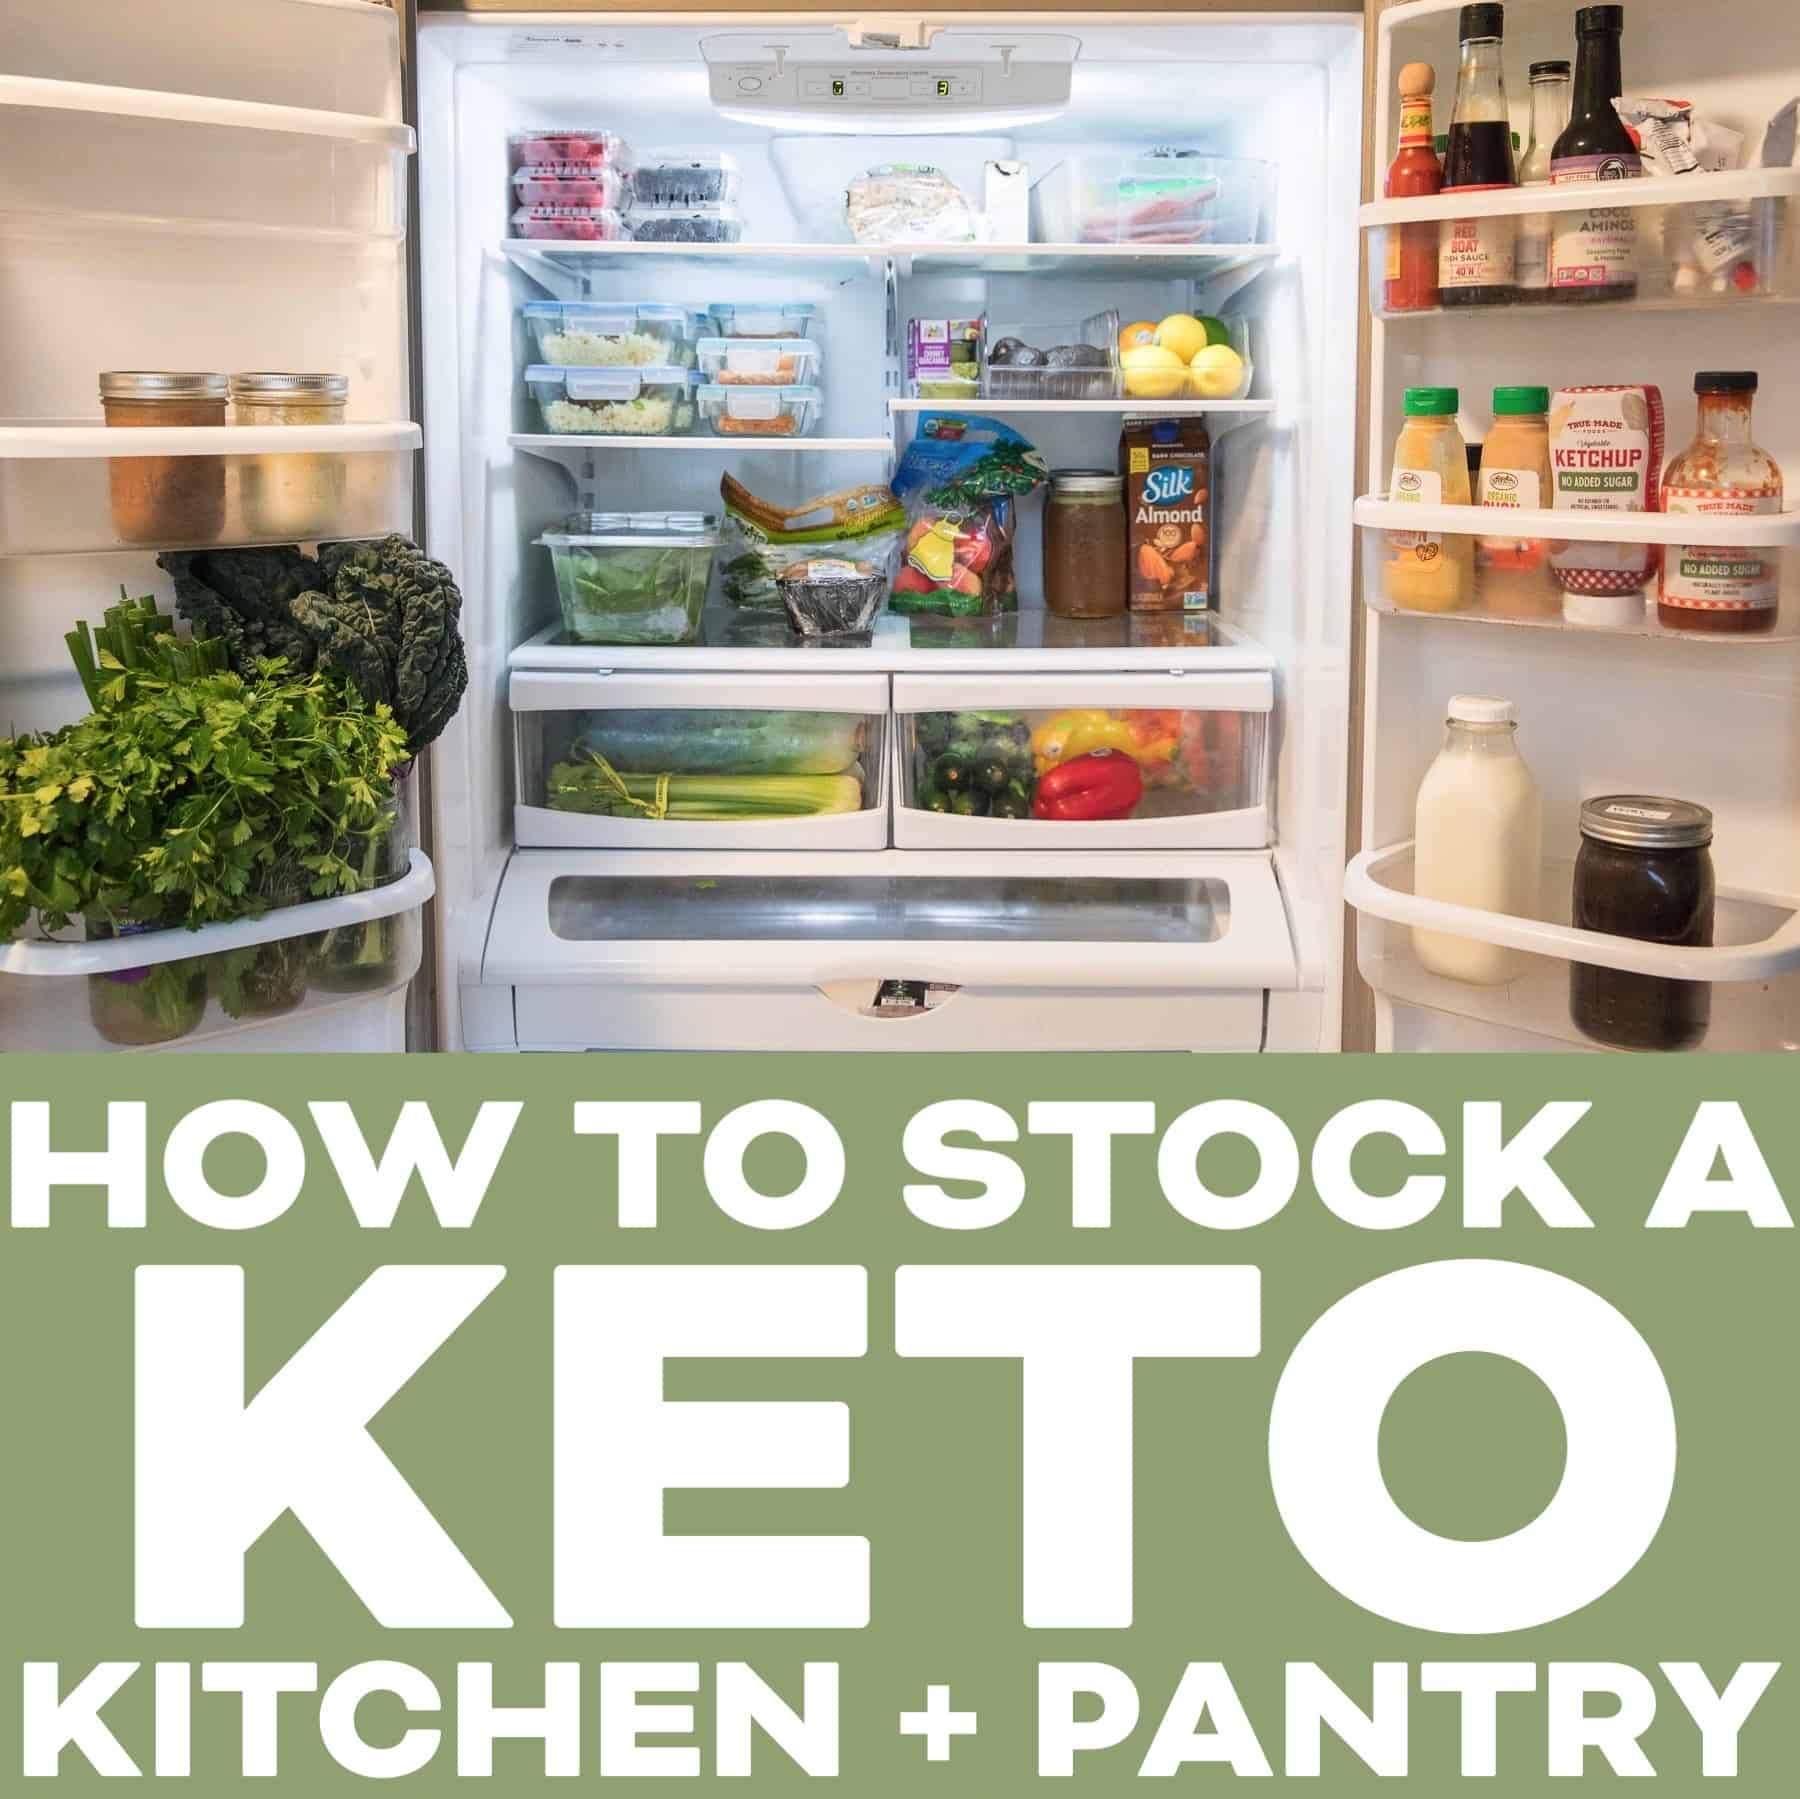 https://www.tasteslovely.com/wp-content/uploads/2020/01/How-to-stock-a-keto-kitchen-pantry-tasteslovely.com_.jpg